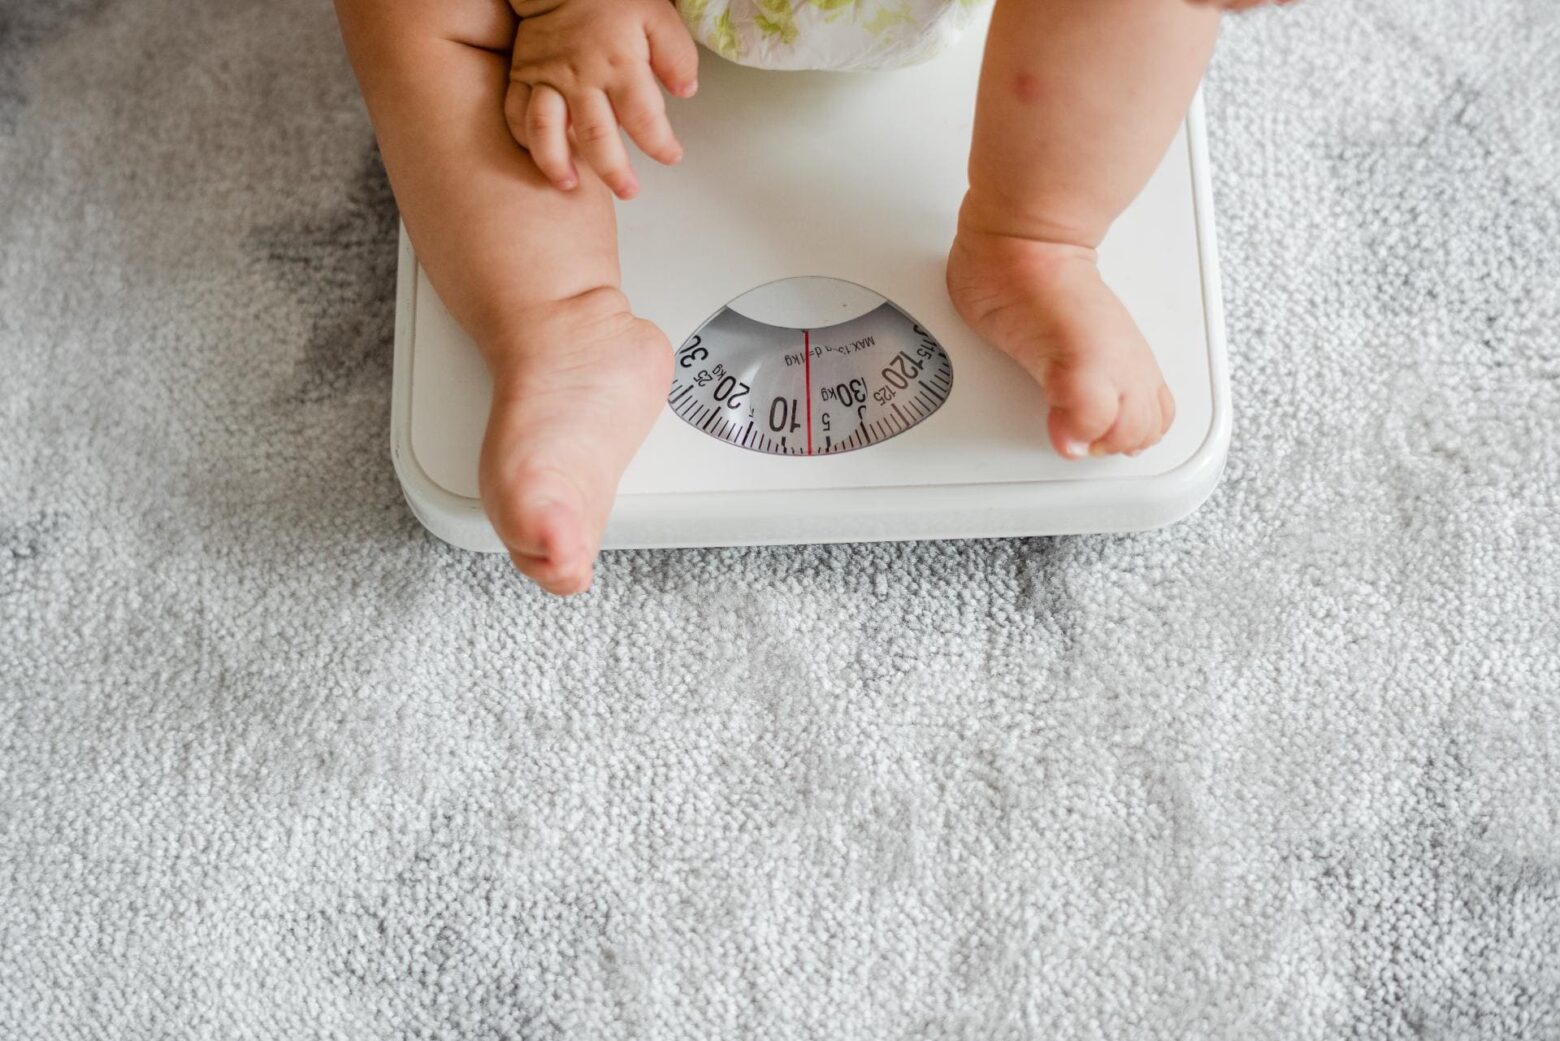 Abordagem da obesidade infantil: um tema essencial na medicina moderna